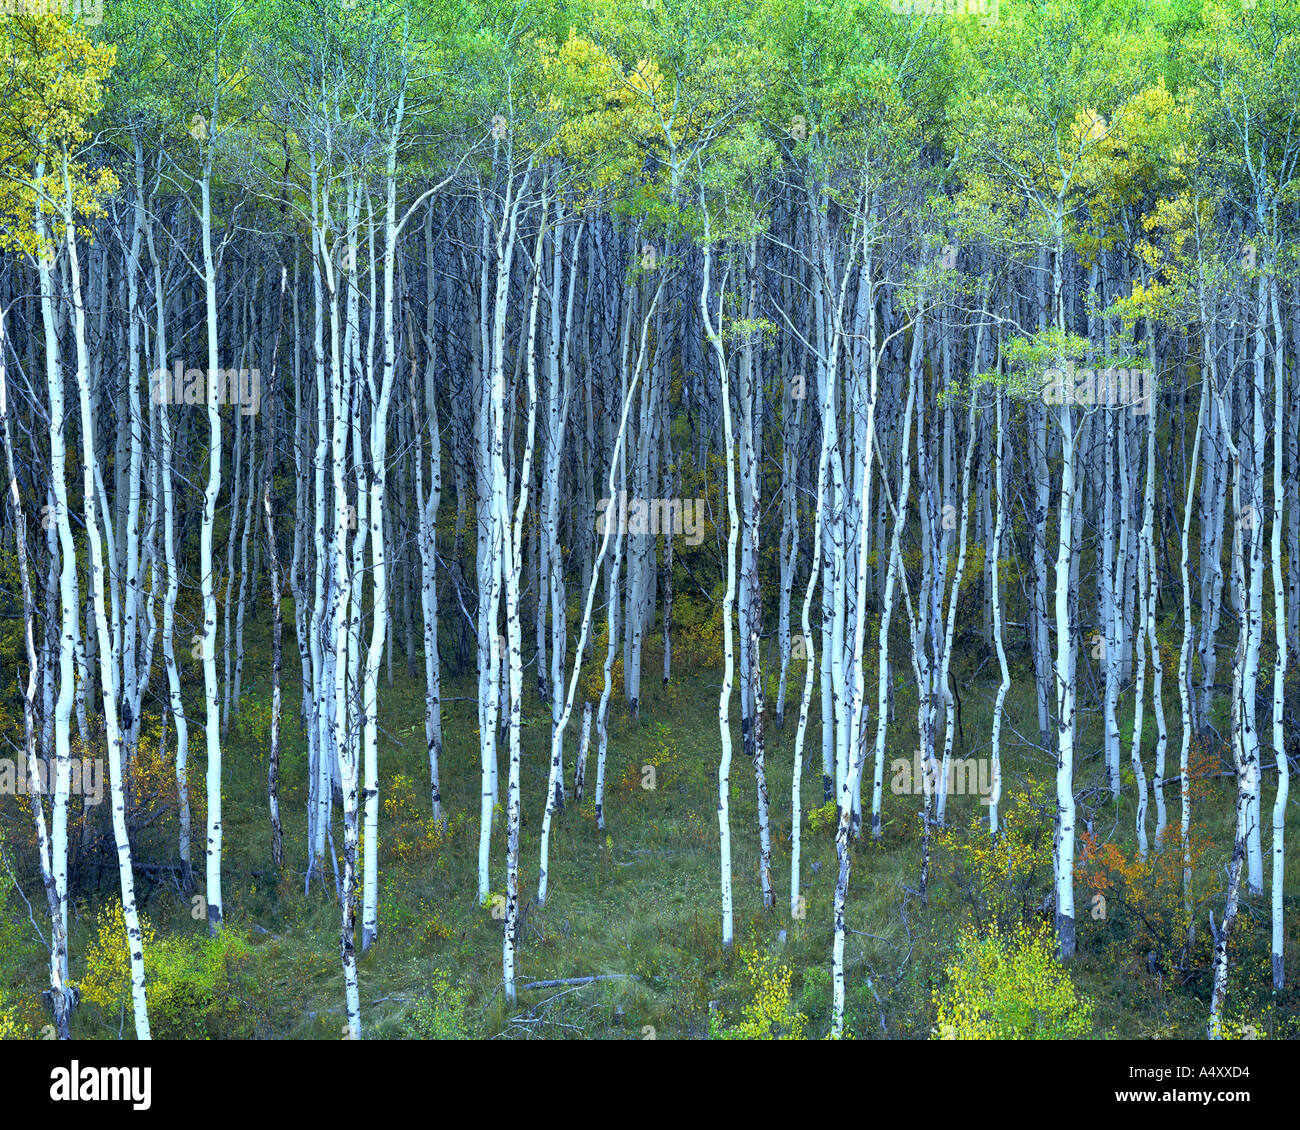 USA - COLORADO: Aspens in the Rocky Mountains Stock Photo